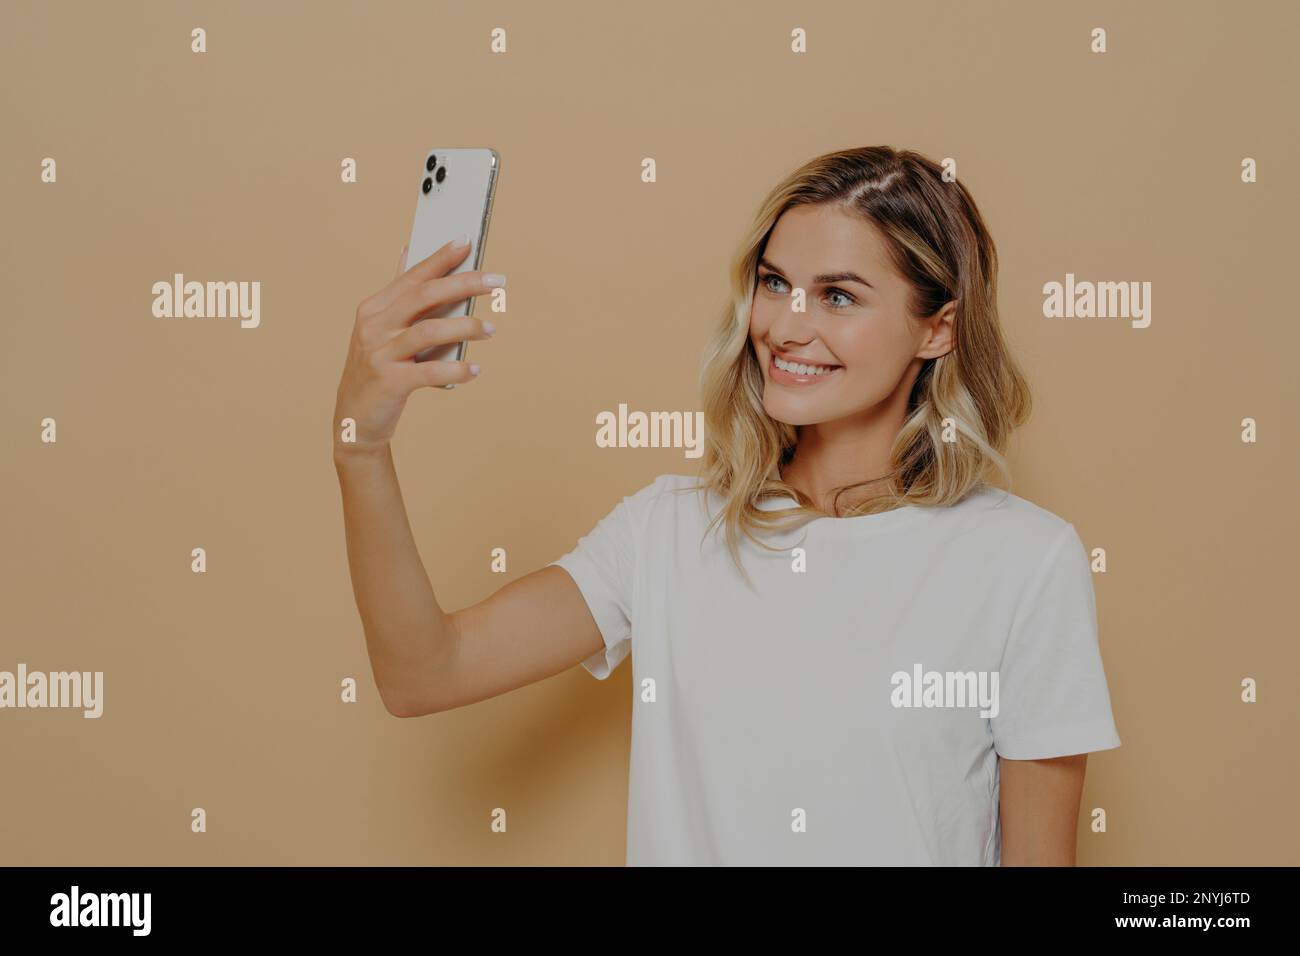 Junge blonde, lächelnde Frau, die ein Smartphone benutzt, während sie mit Familie oder Freund Videoanrufe führt, in einem weißen T-Shirt gekleidet ist, auf die mobile Kamera schaut und Smili spielt Stockfoto